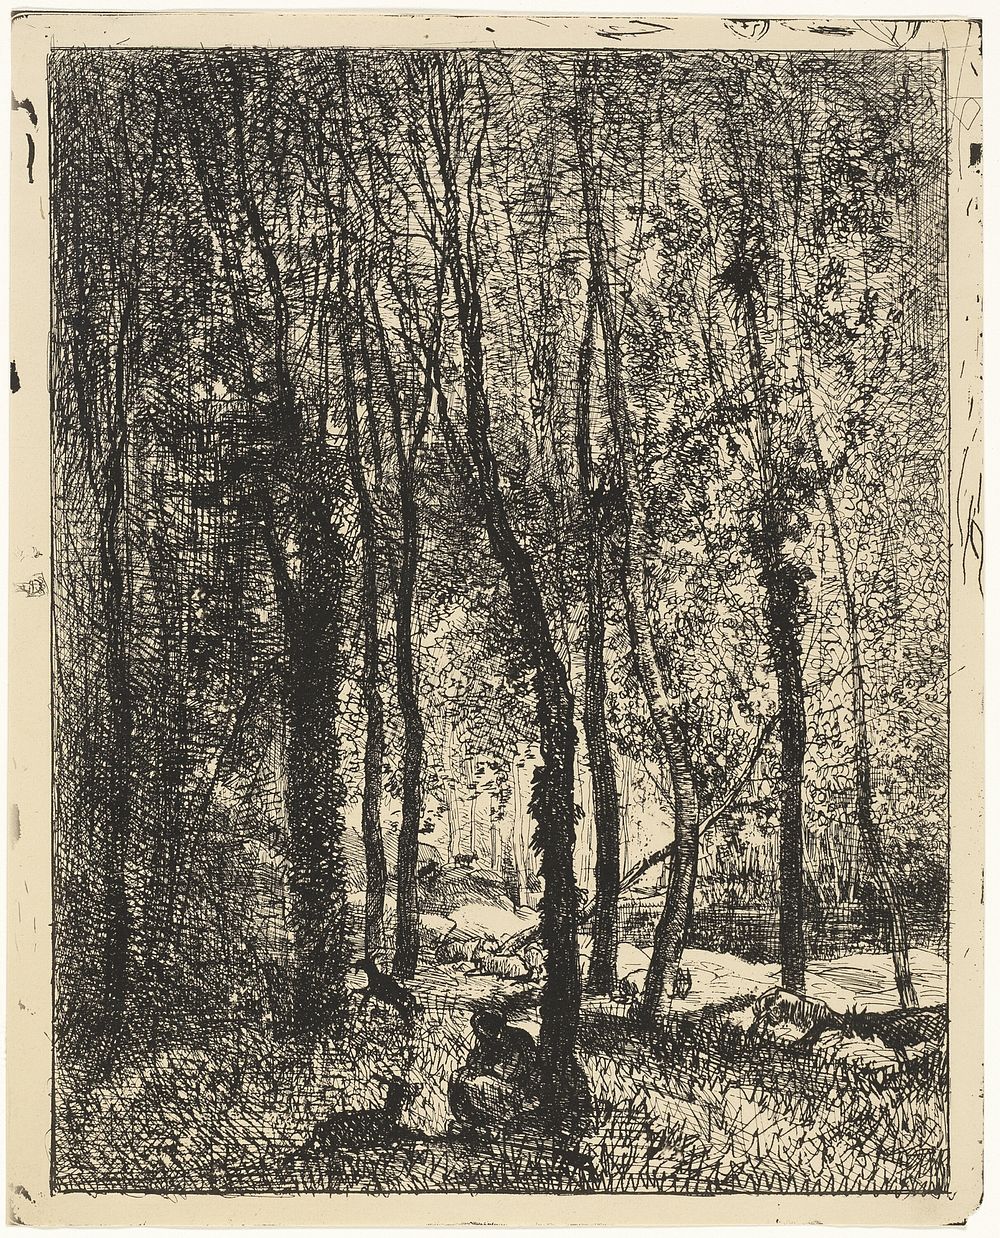 Goatherd by Charles François Daubigny